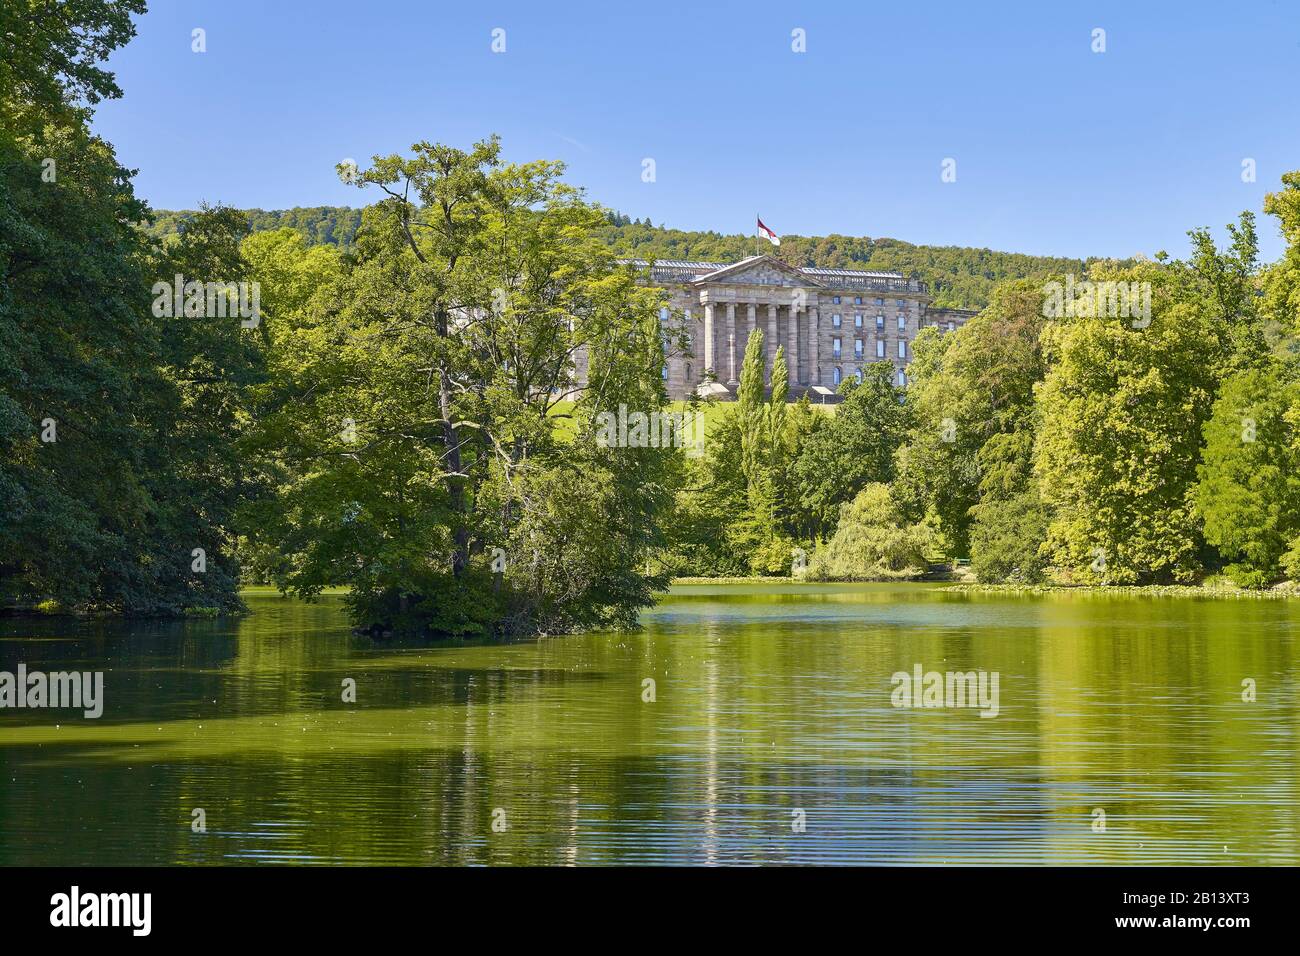 Château dans le parc de montagne Wilhelmshooehe au-dessus du lac, Kassel, Hesse, Allemagne Wilhelmshooehe au-dessus du lac, Kassel, Hesse, Allemagne Banque D'Images